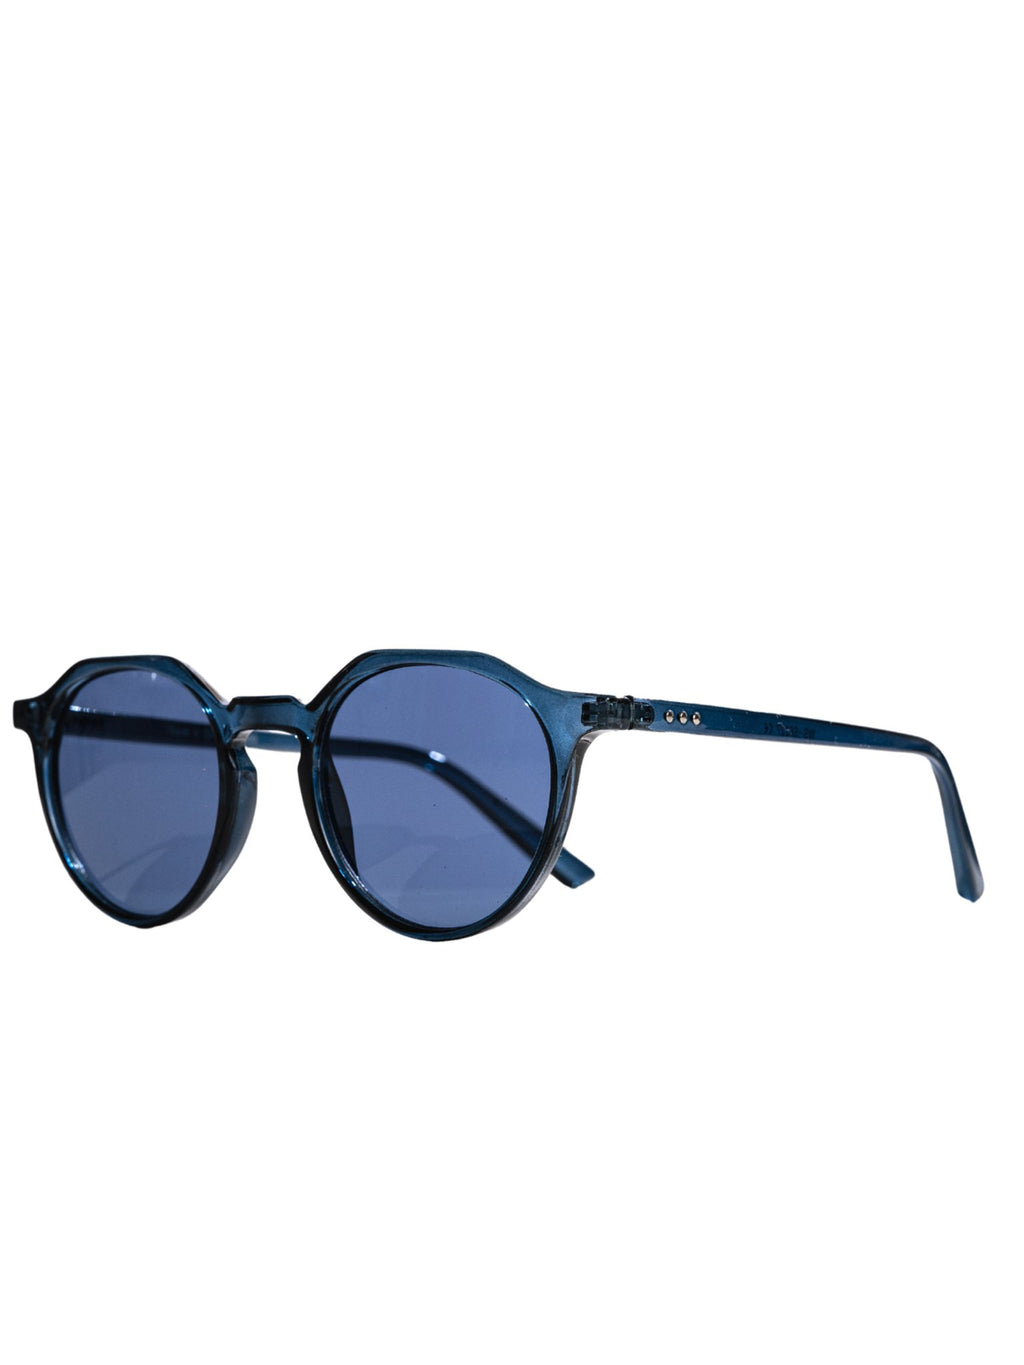 Apvalios saulės akiniai - mėlyni